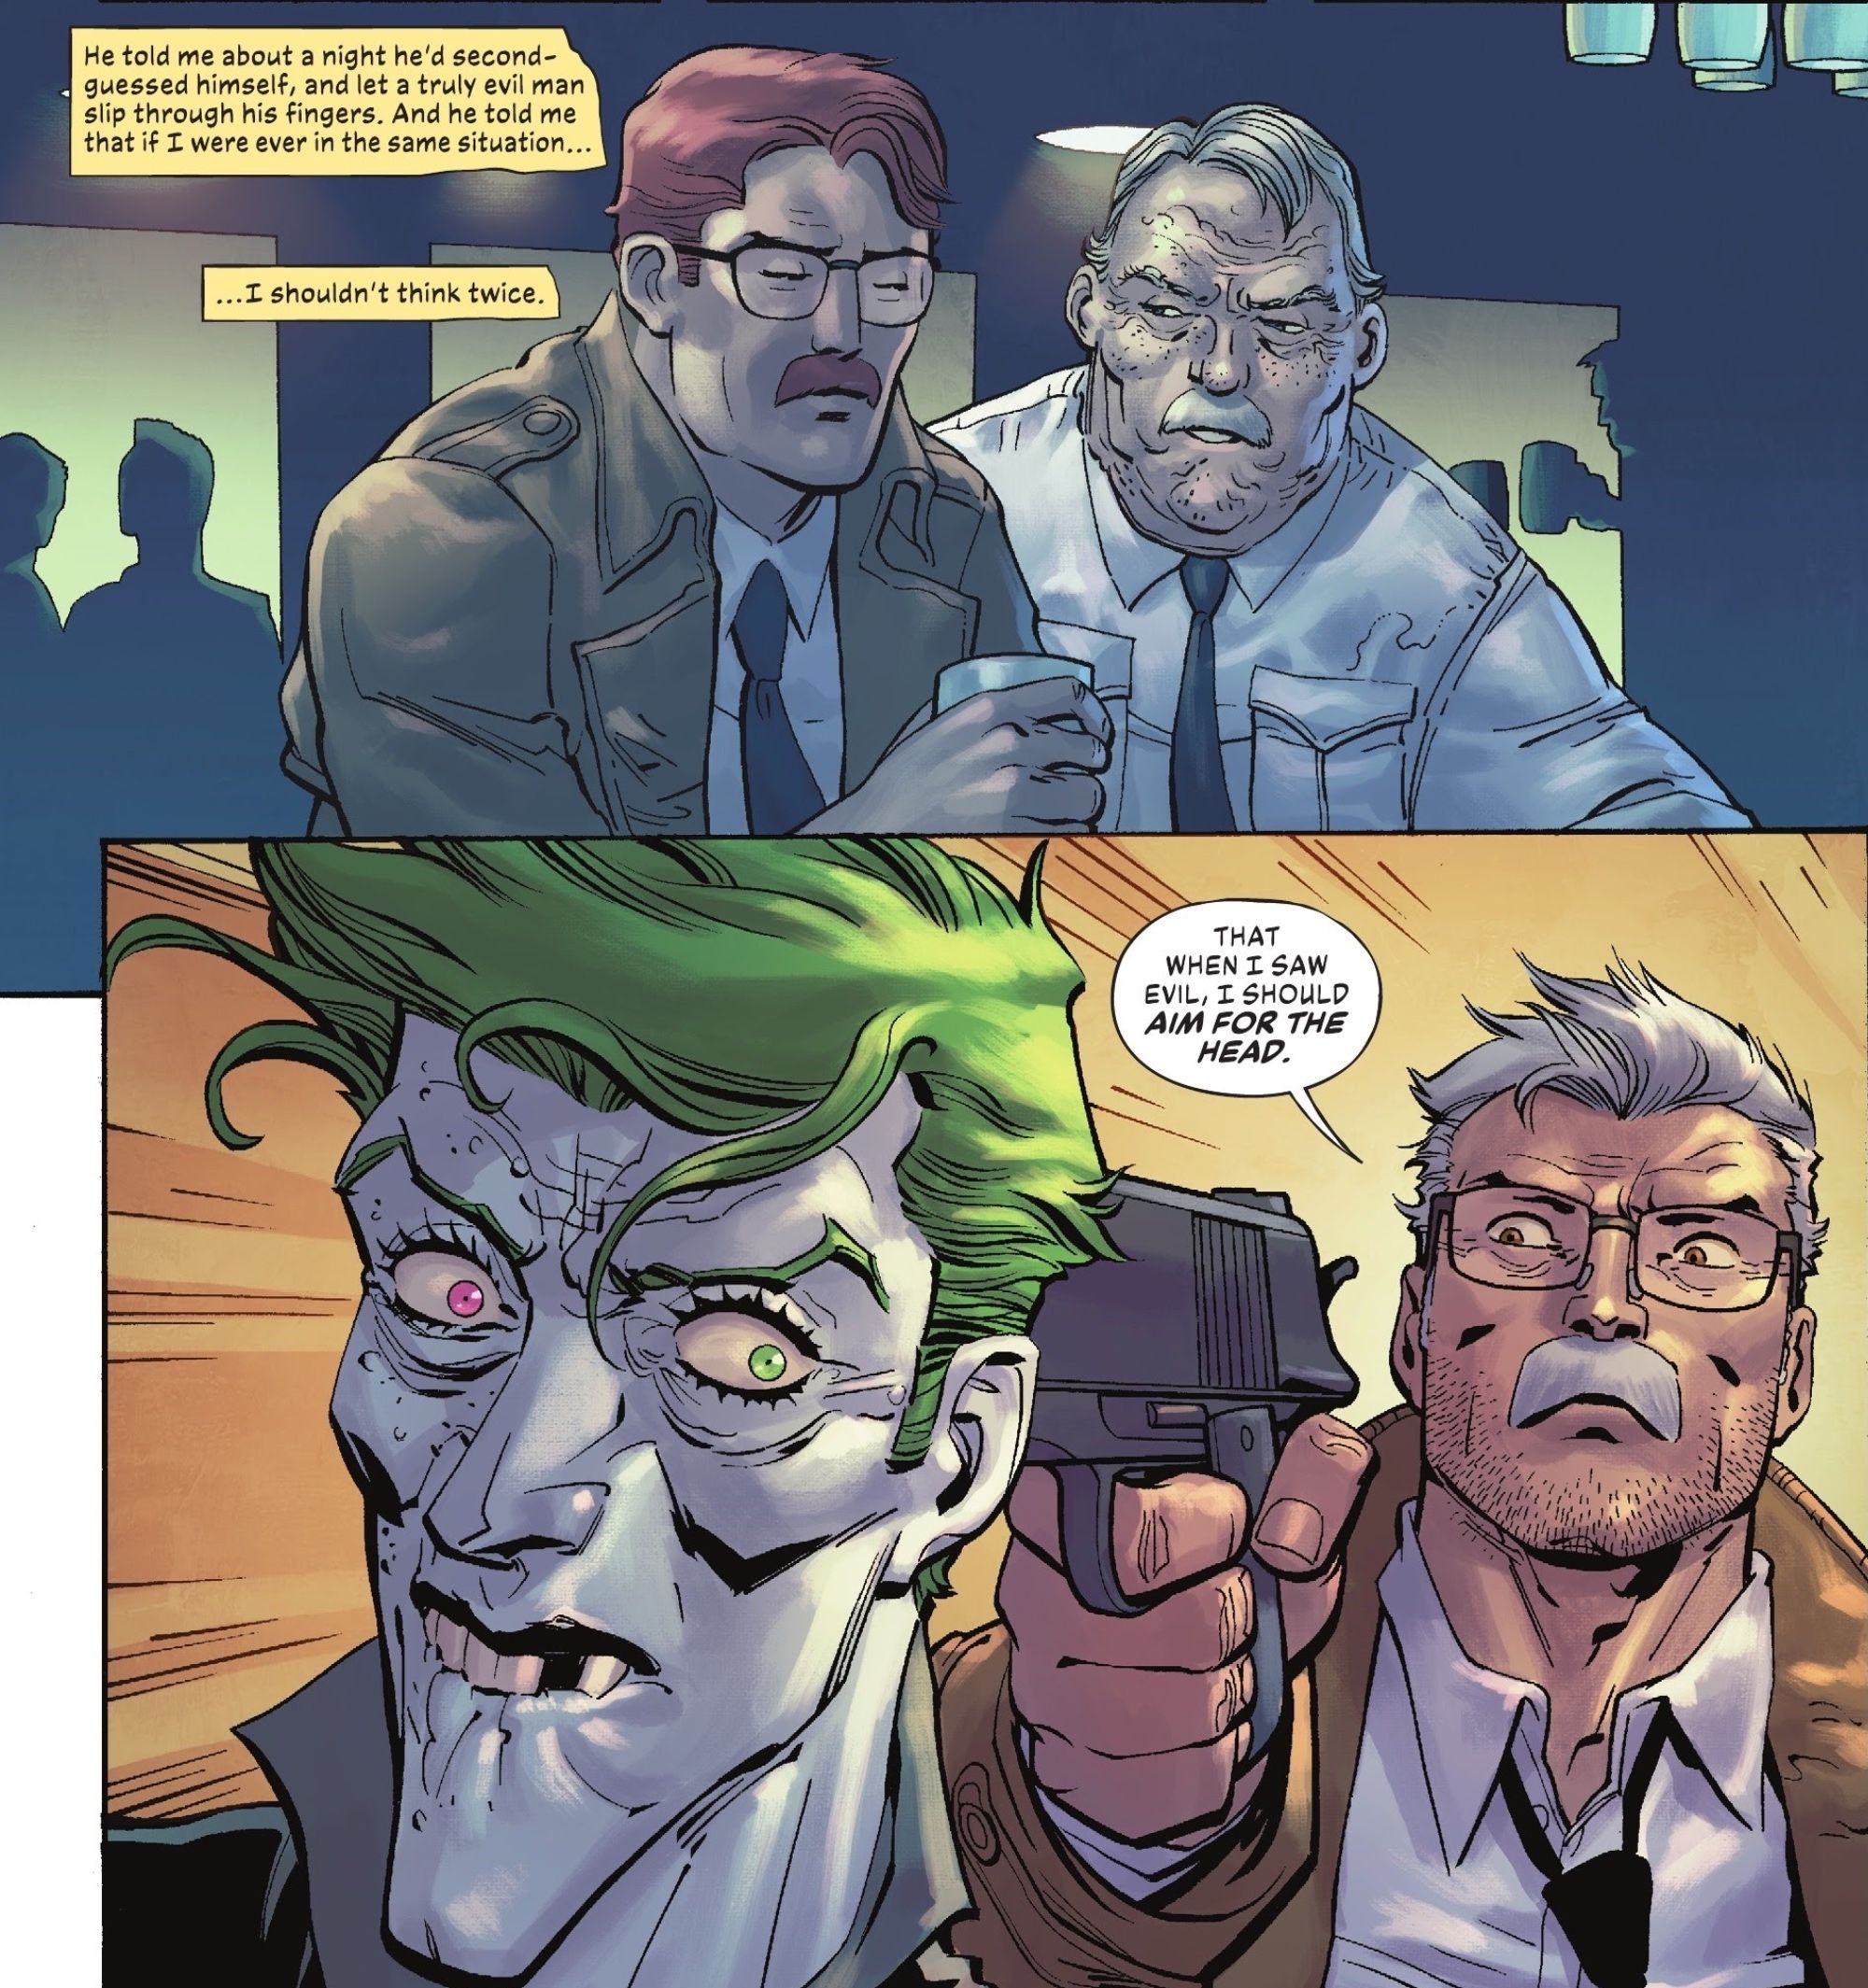 Joker’s Murder By a Batman Hero is Being Teased By DC